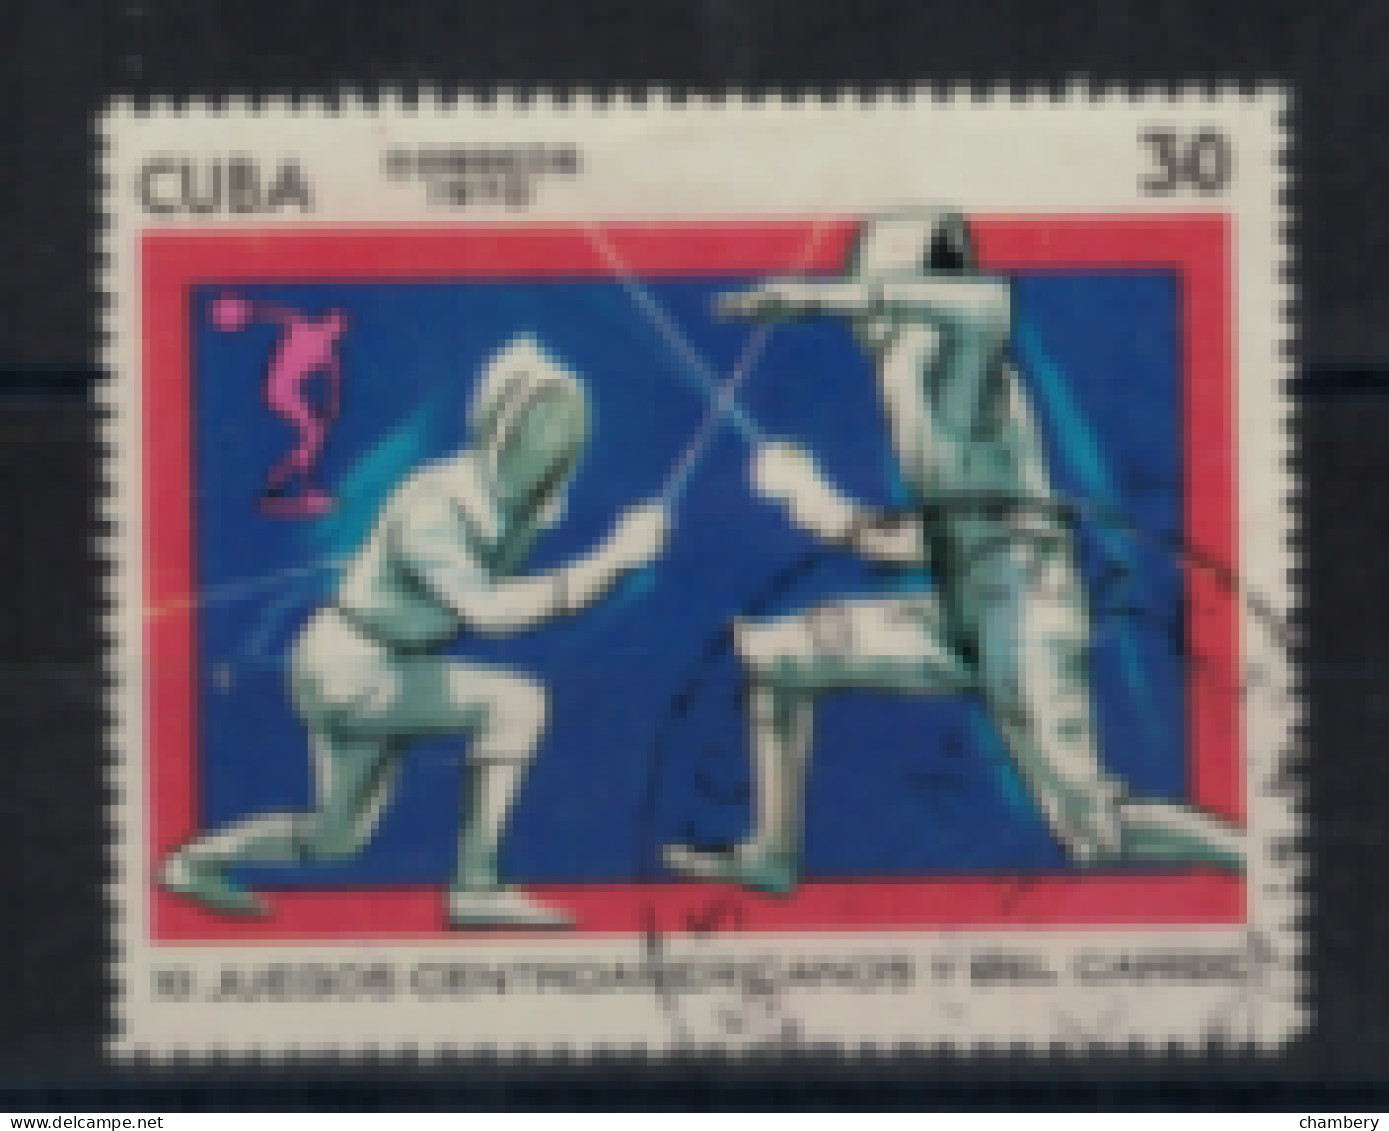 Cuba - "11ème Jeux Centraméricains Et Des Caraïbes : Escrime" - Oblitéré N° 1376 De 1970 - Oblitérés